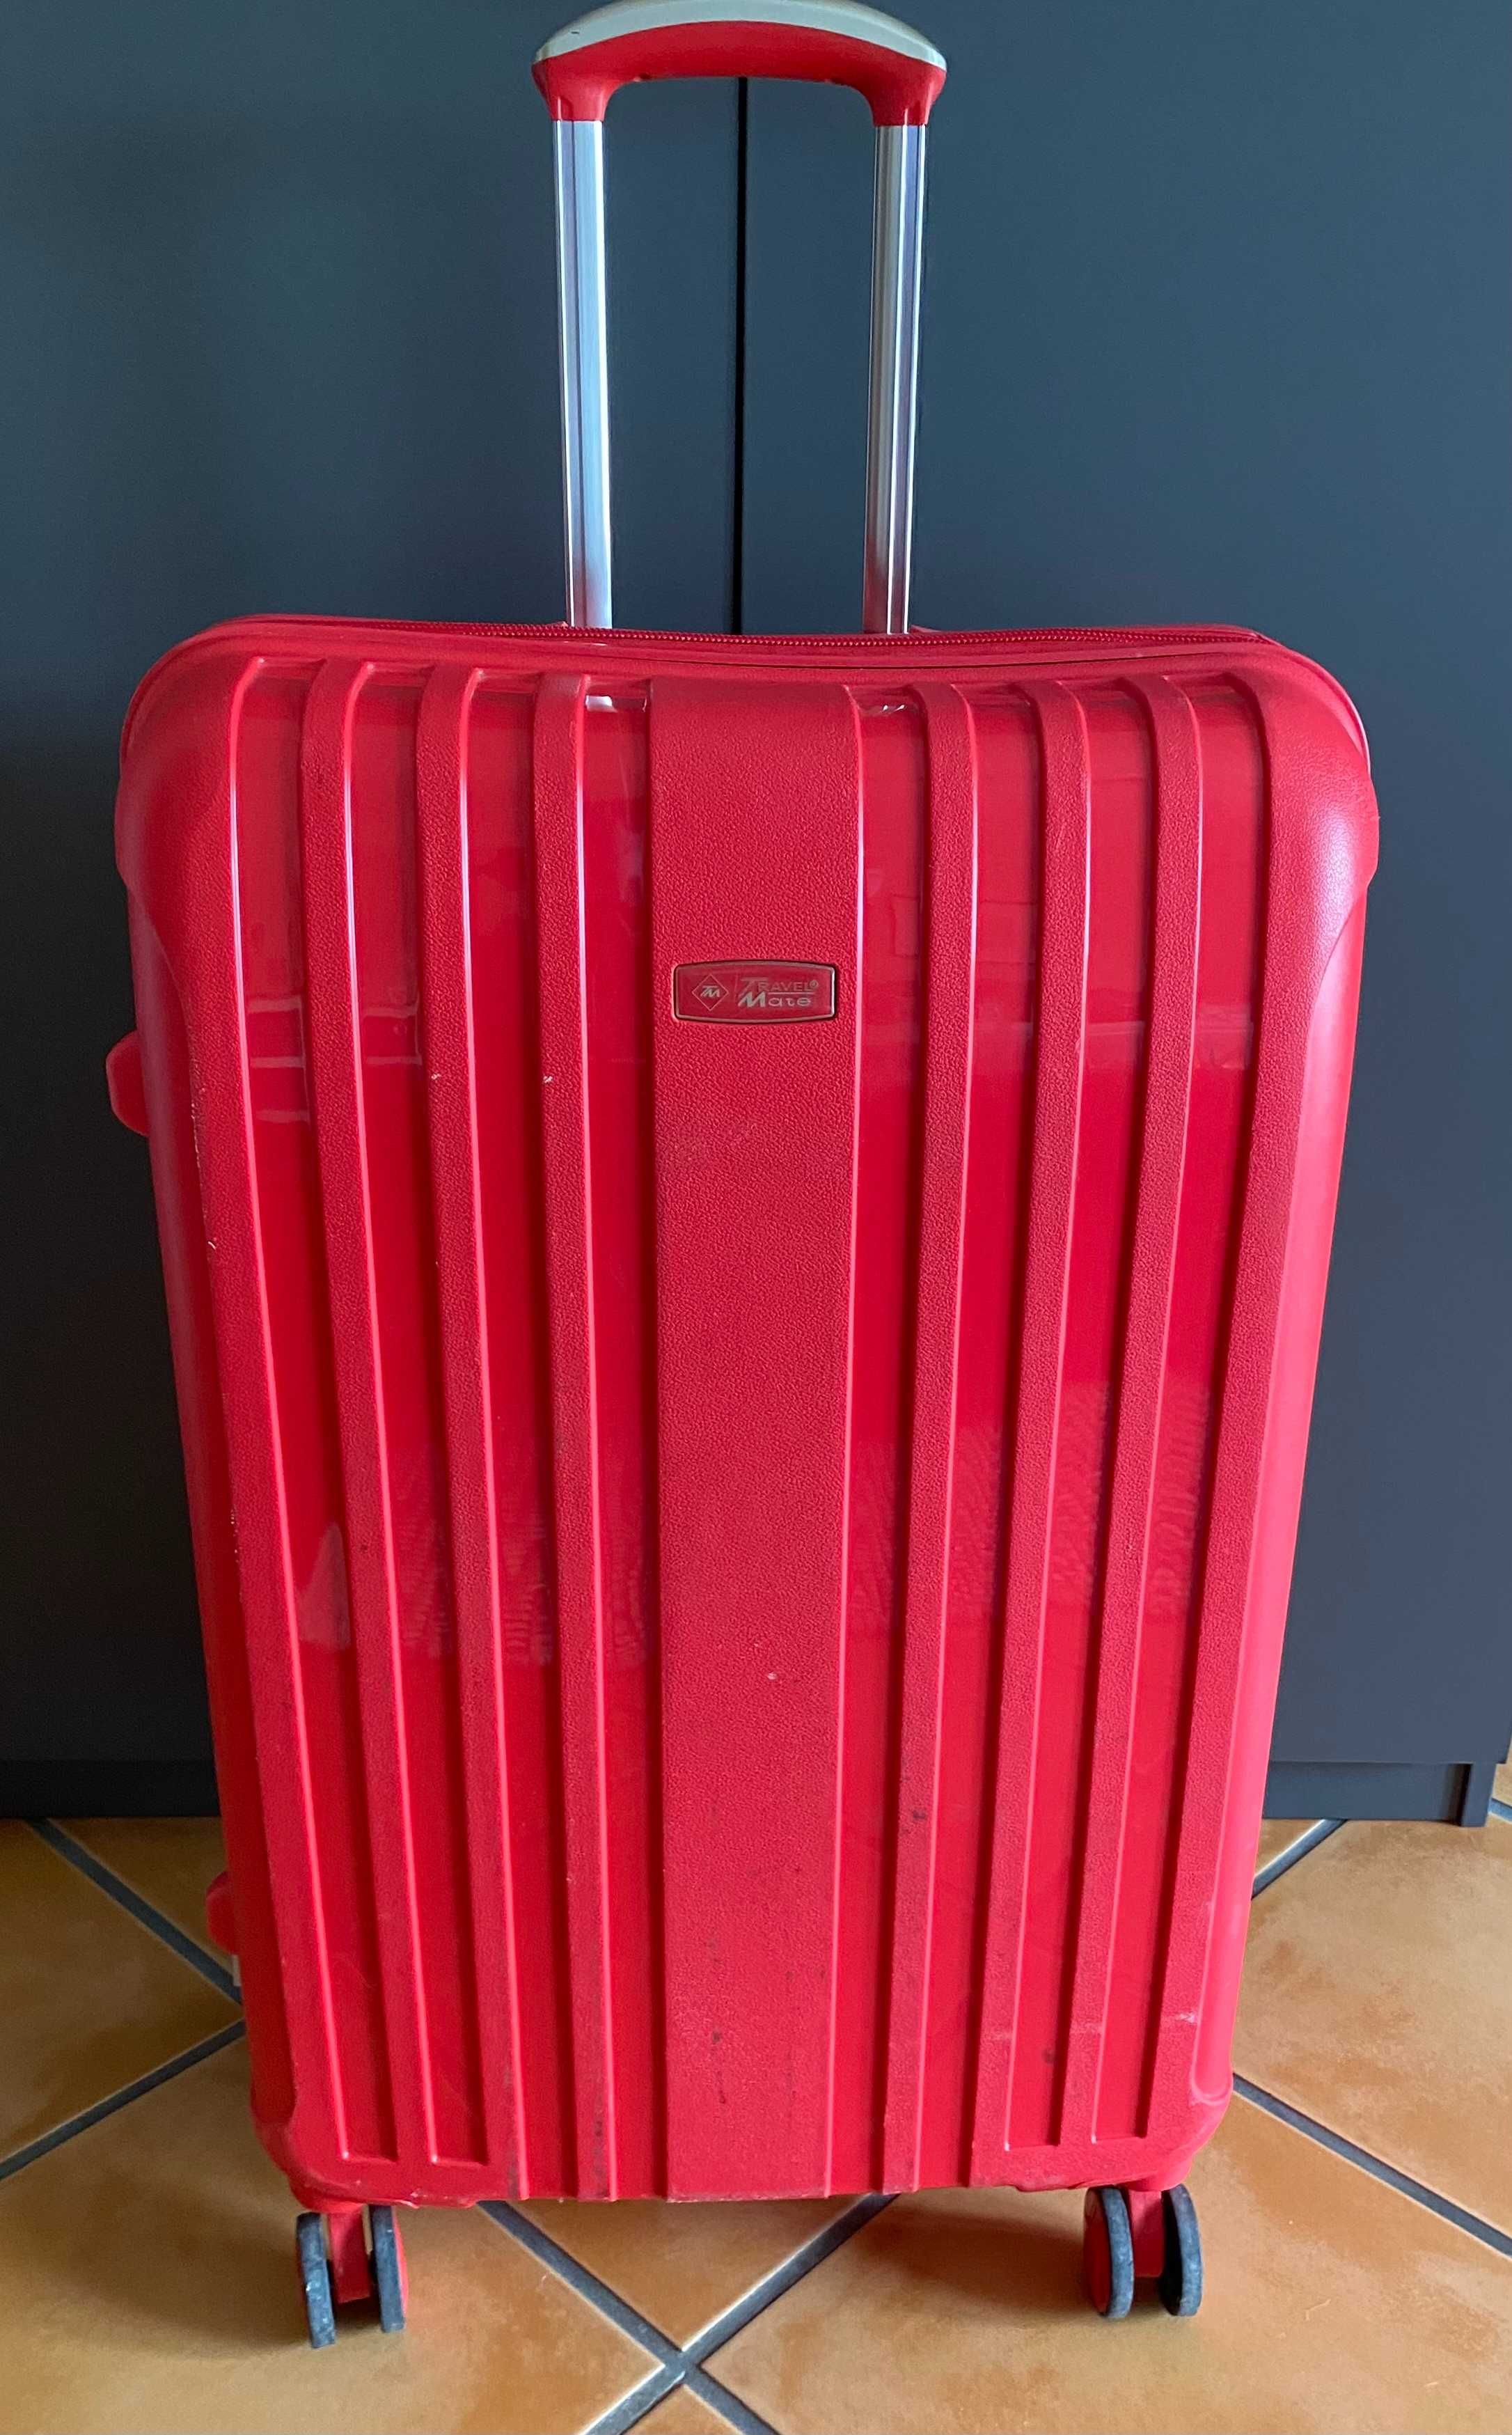 Large Travelmate Travel Luggage (Damaged)